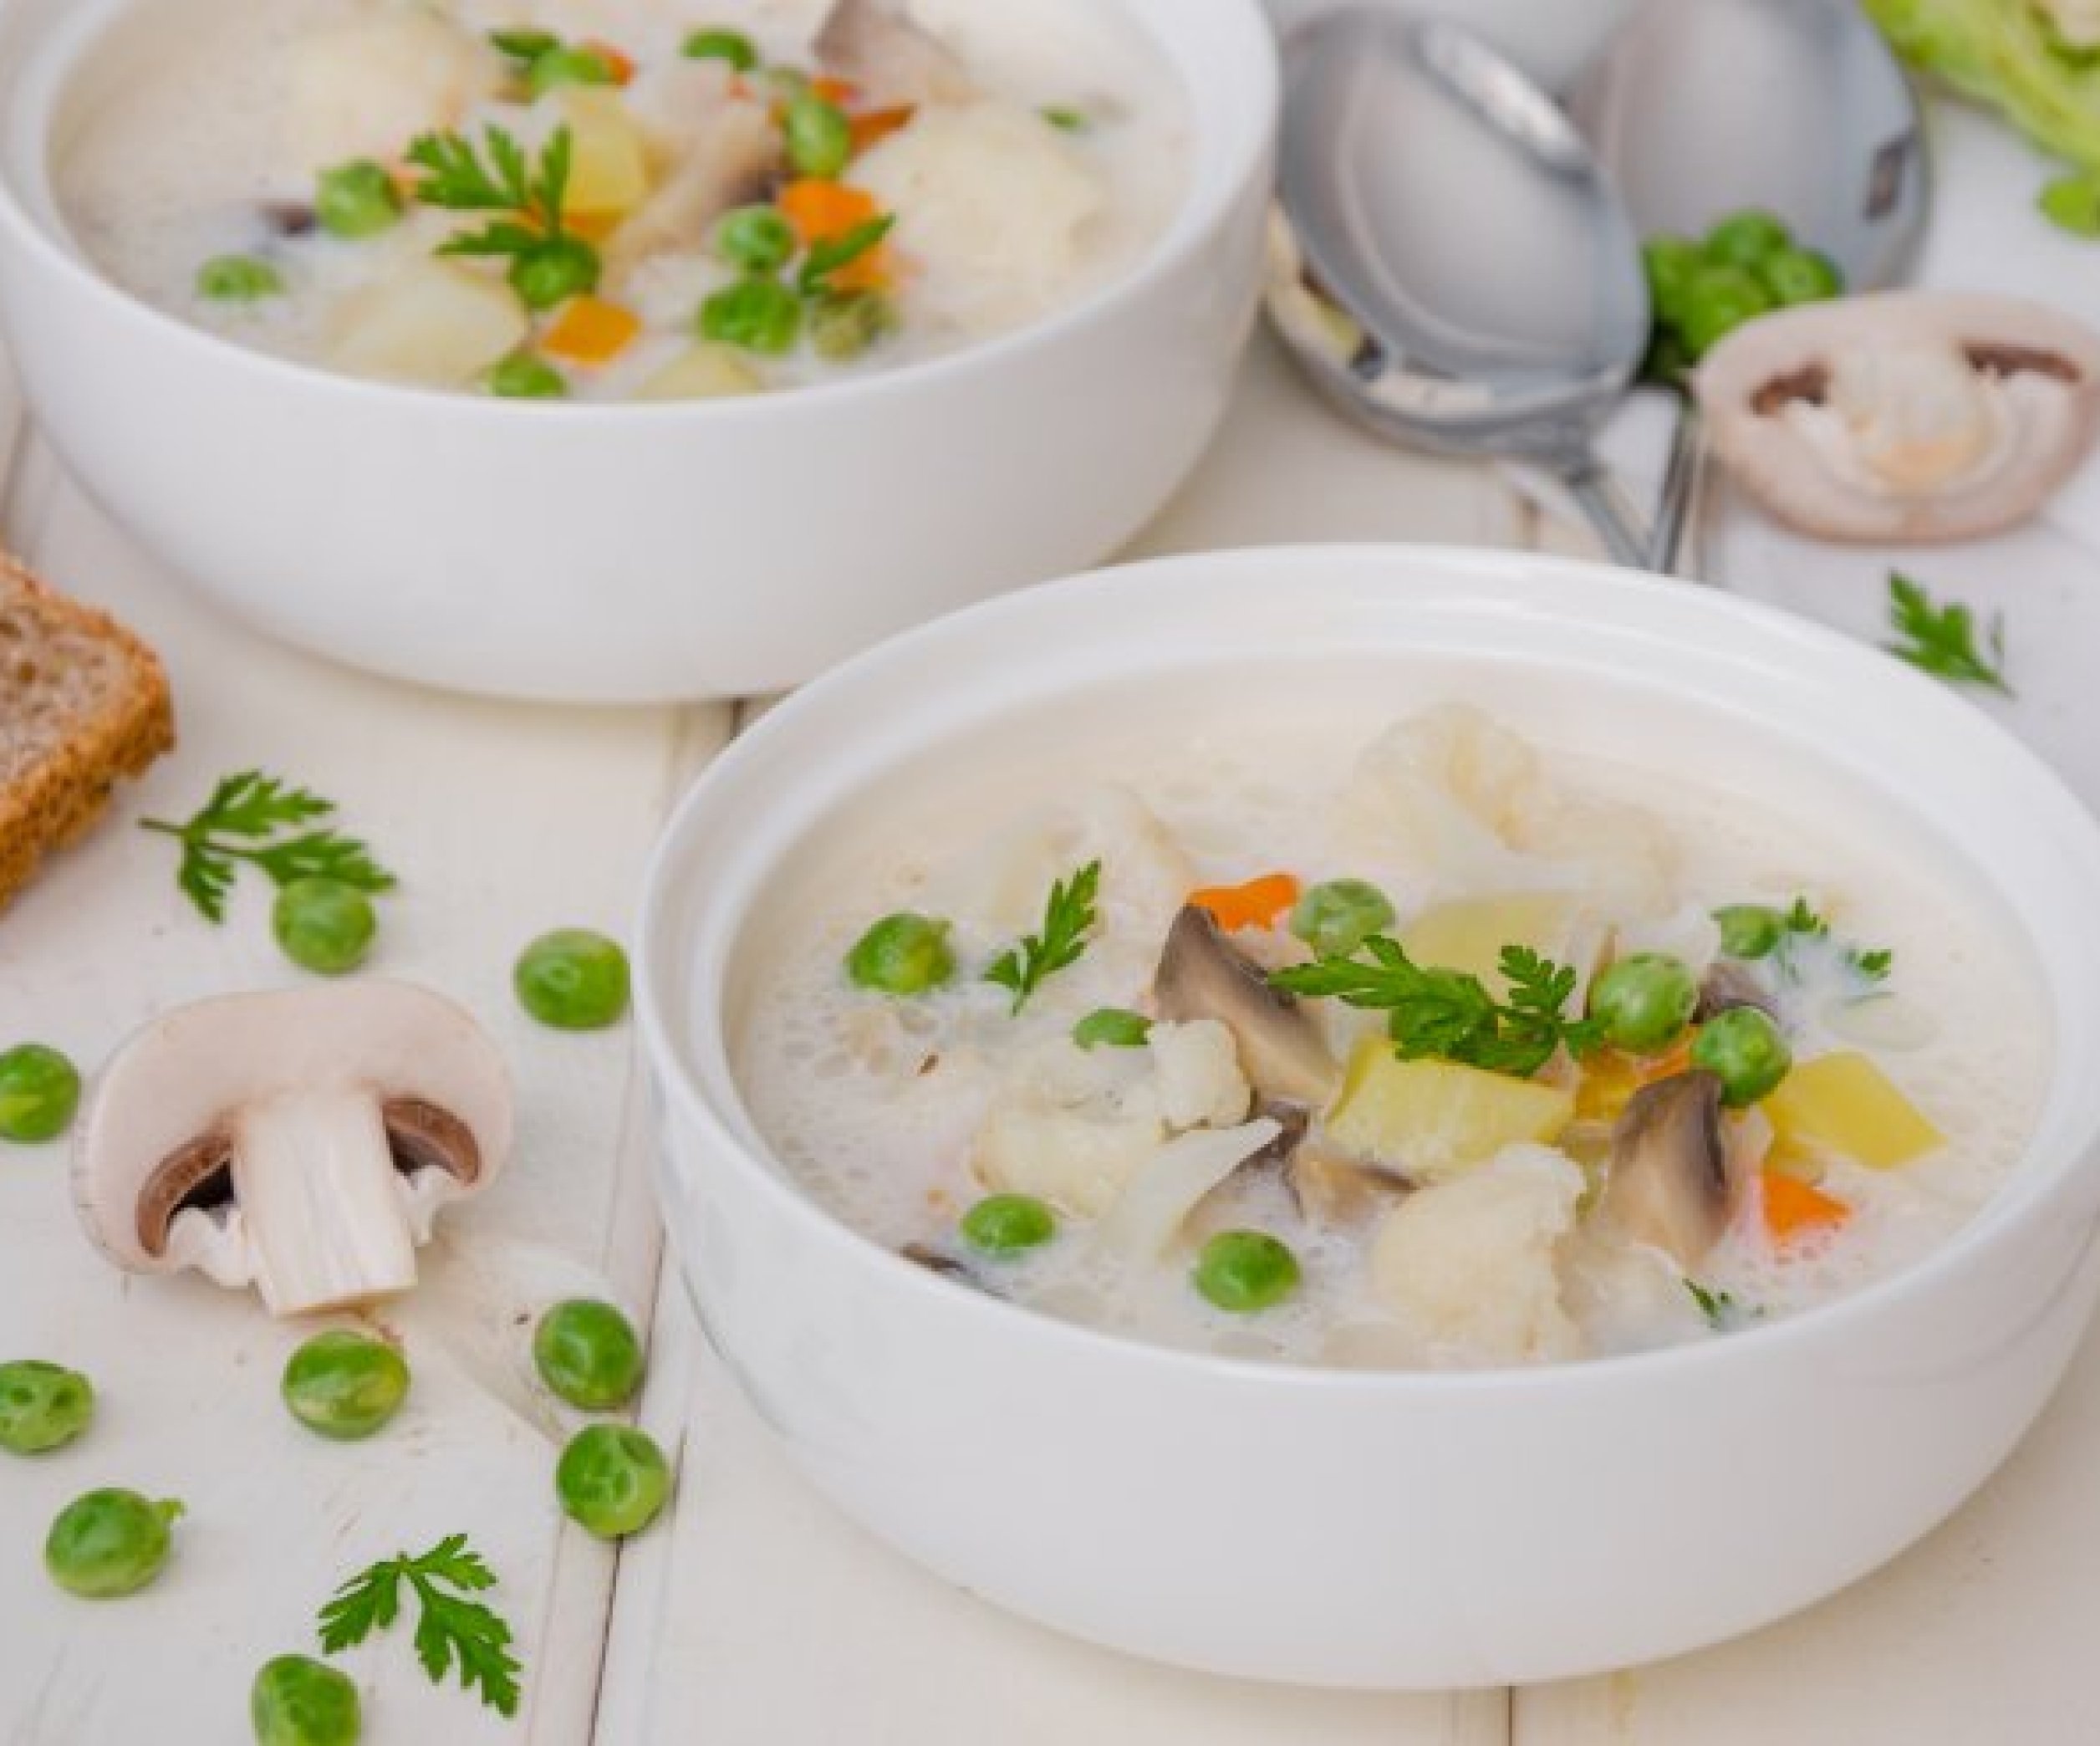 Крем-суп для детей